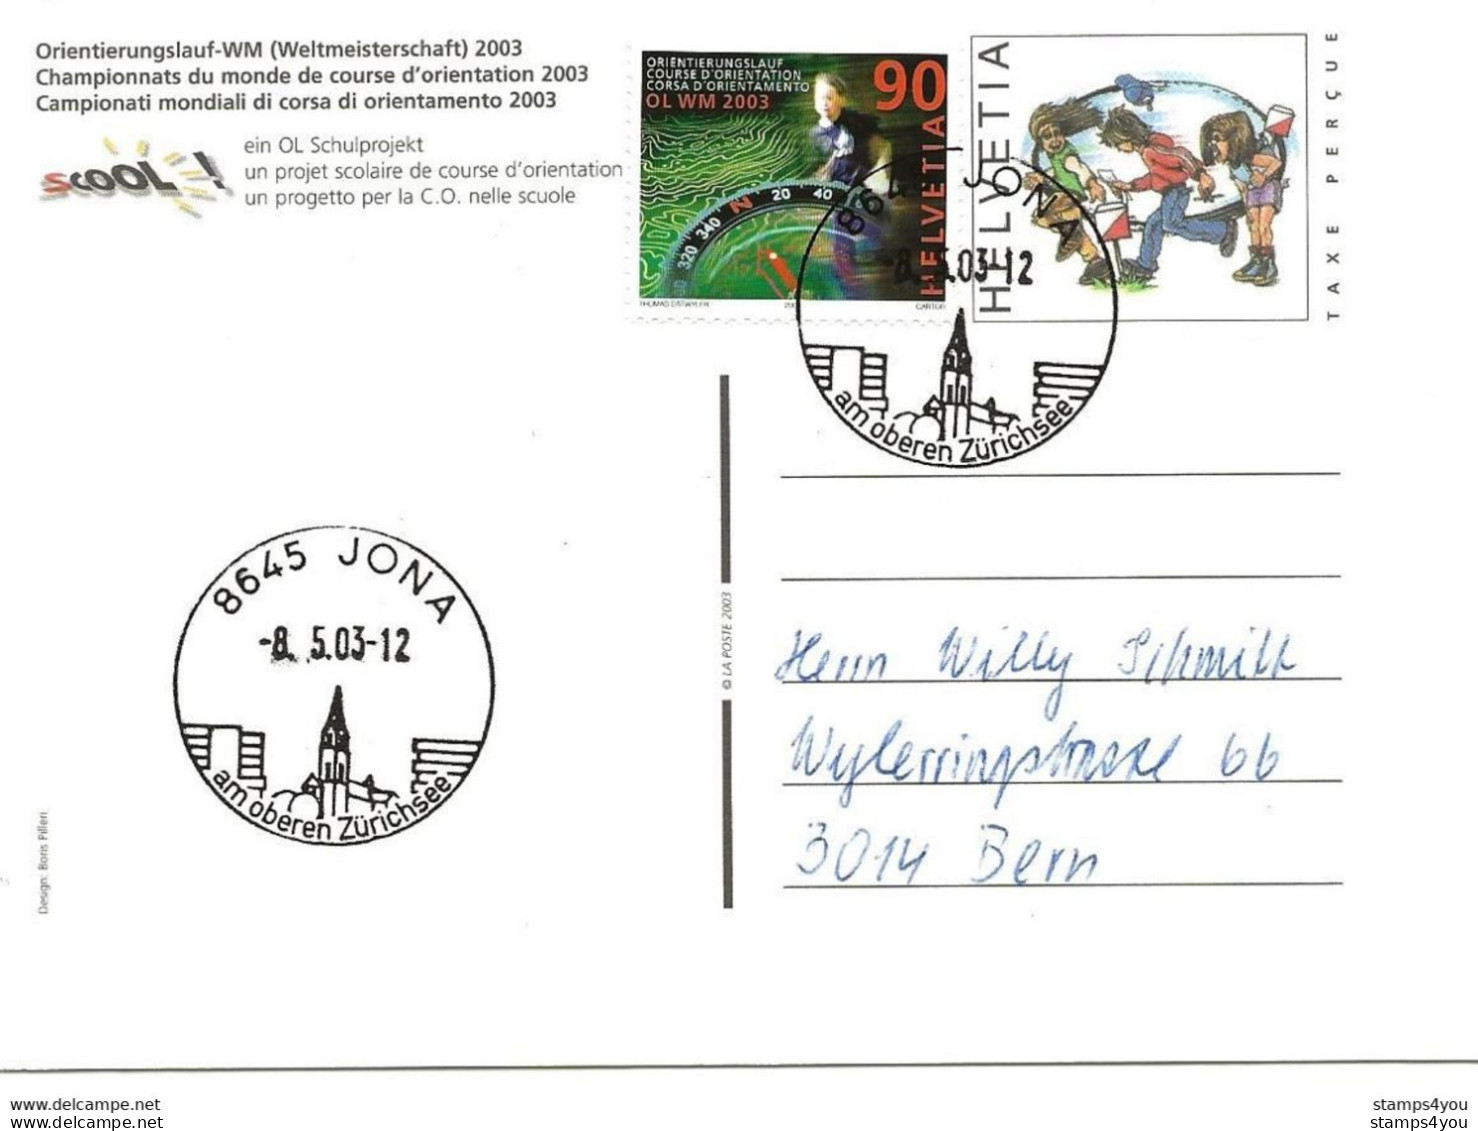 433 - 30 - Entier Postal  "Champ. Monde Course Orientation 2003" Cachets Illustrés Jona 2003 - Athlétisme